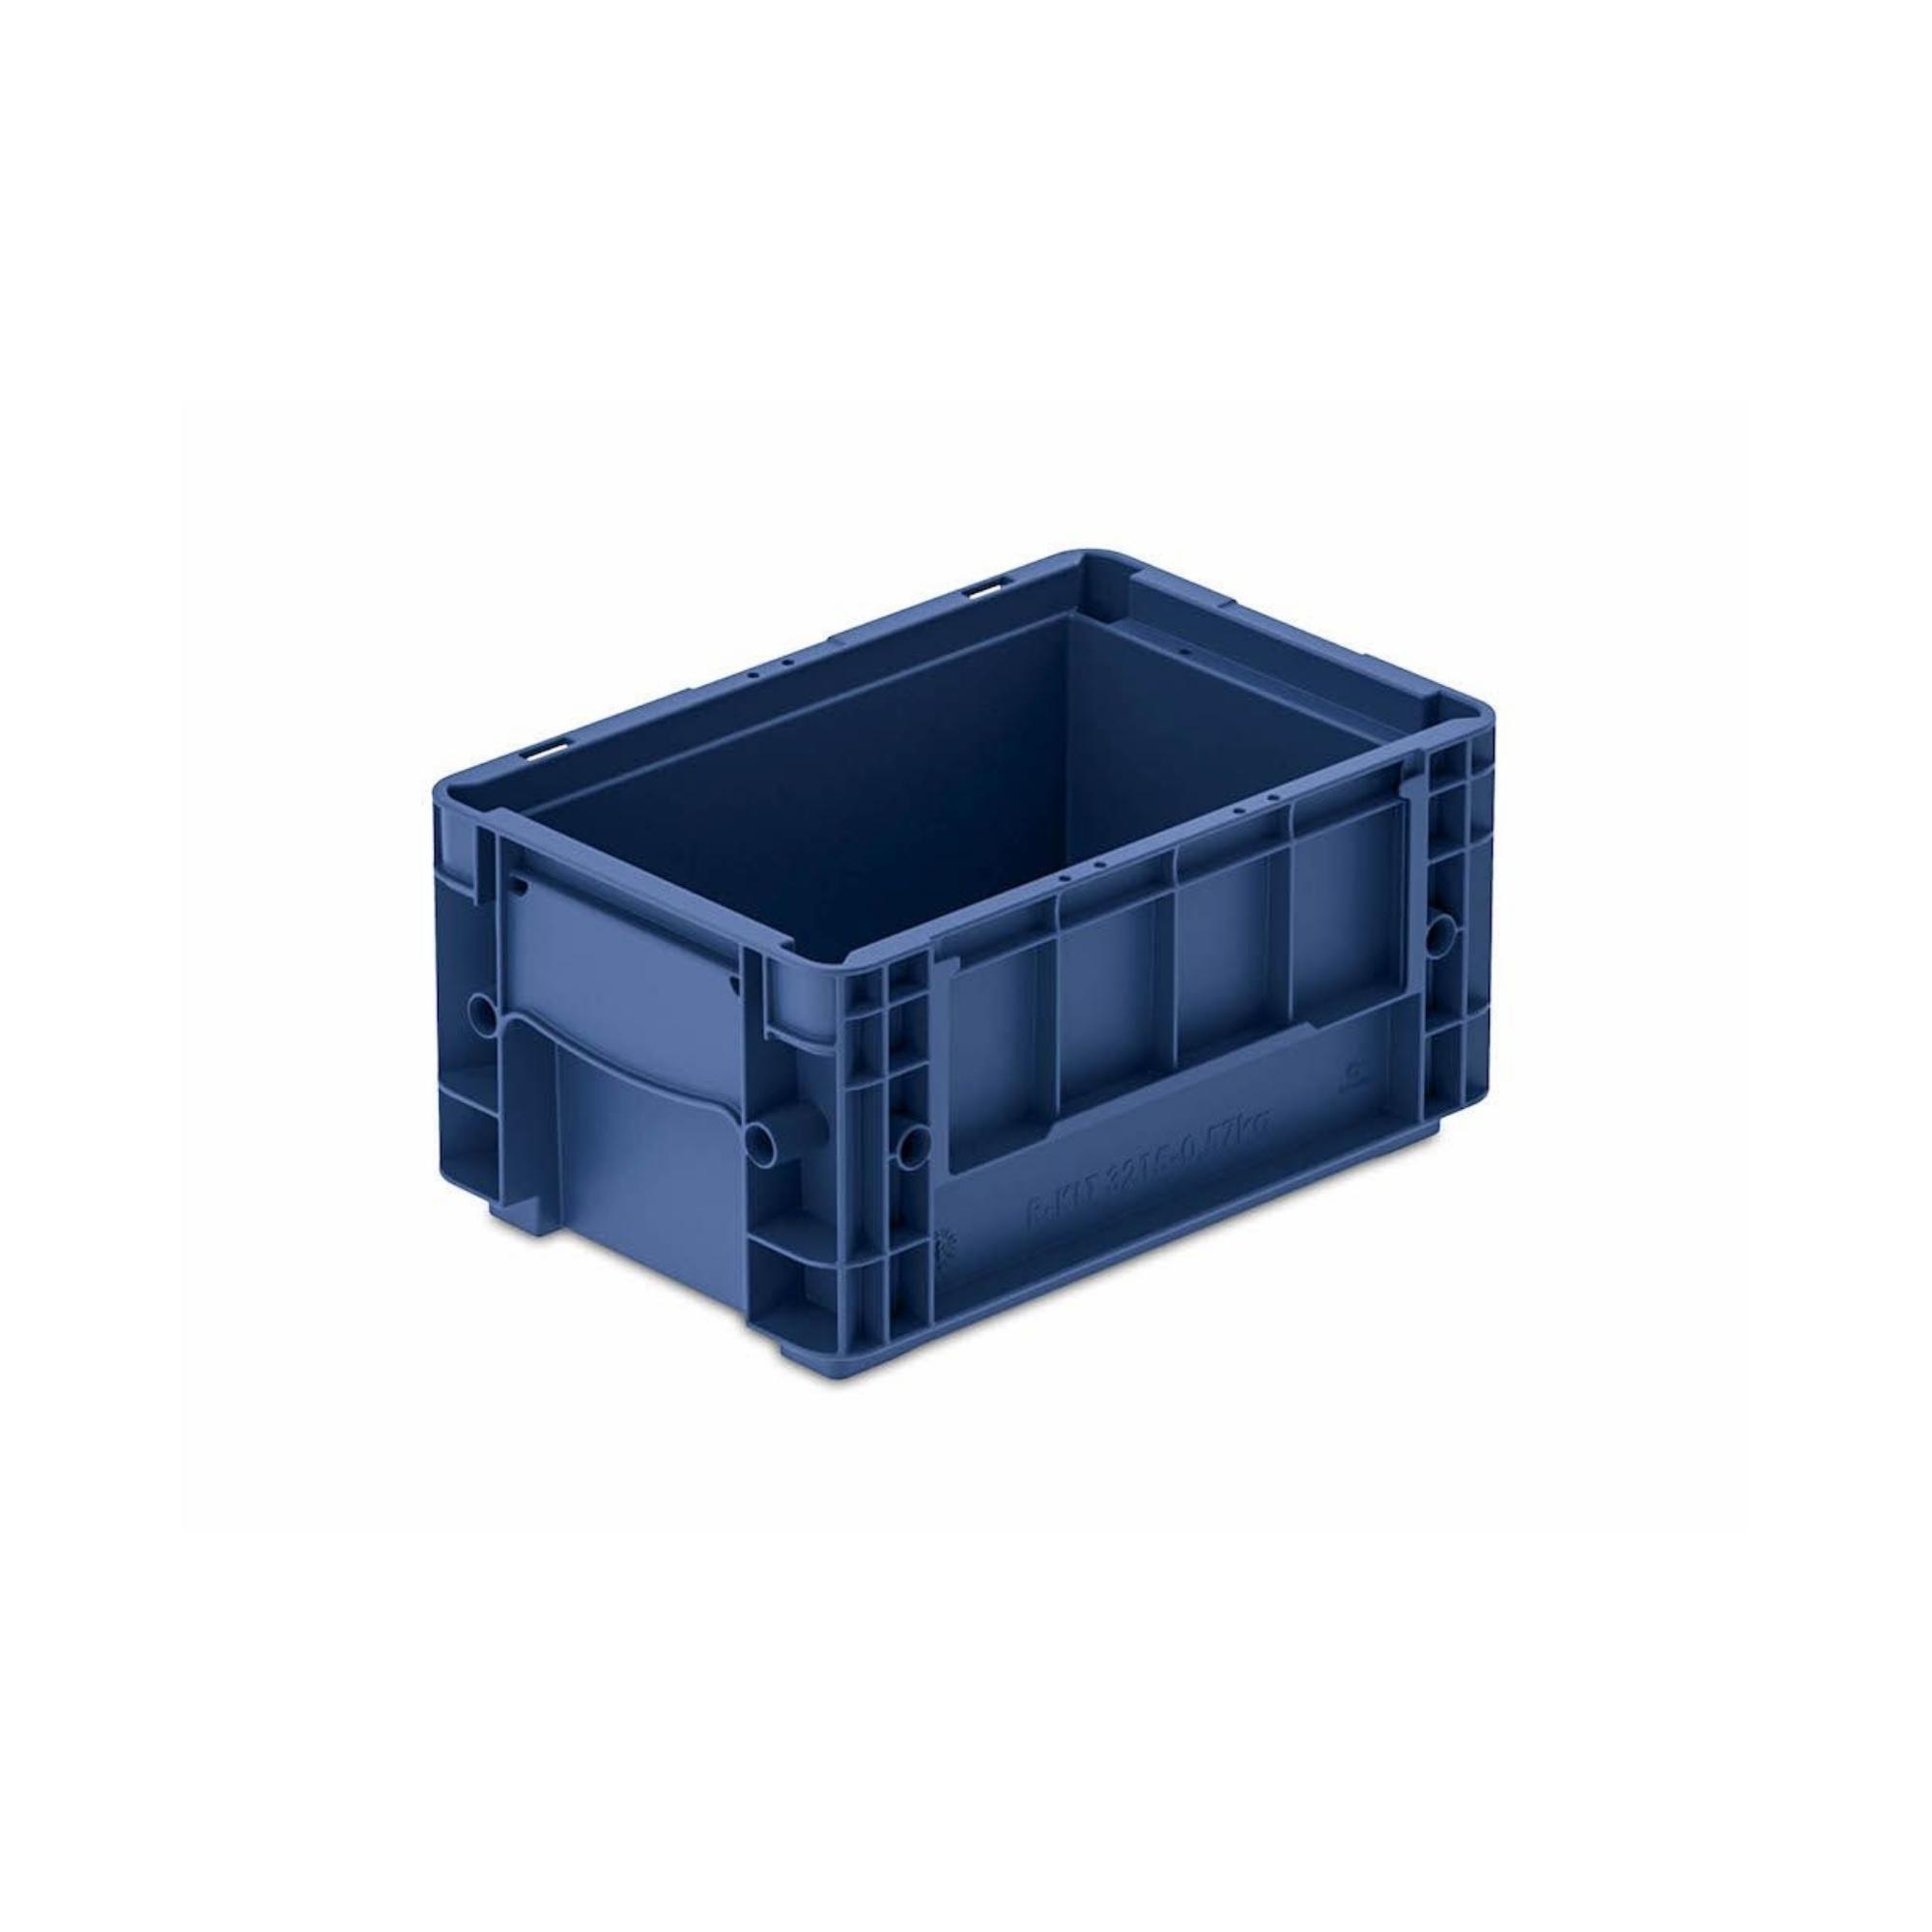 VDA KLT Kleinladungsträger mit Verbundboden | HxBxT 14,7x20x30cm | 5,3 Liter | KLT, Transportbox, Transportbehälter, Stapelbehälter